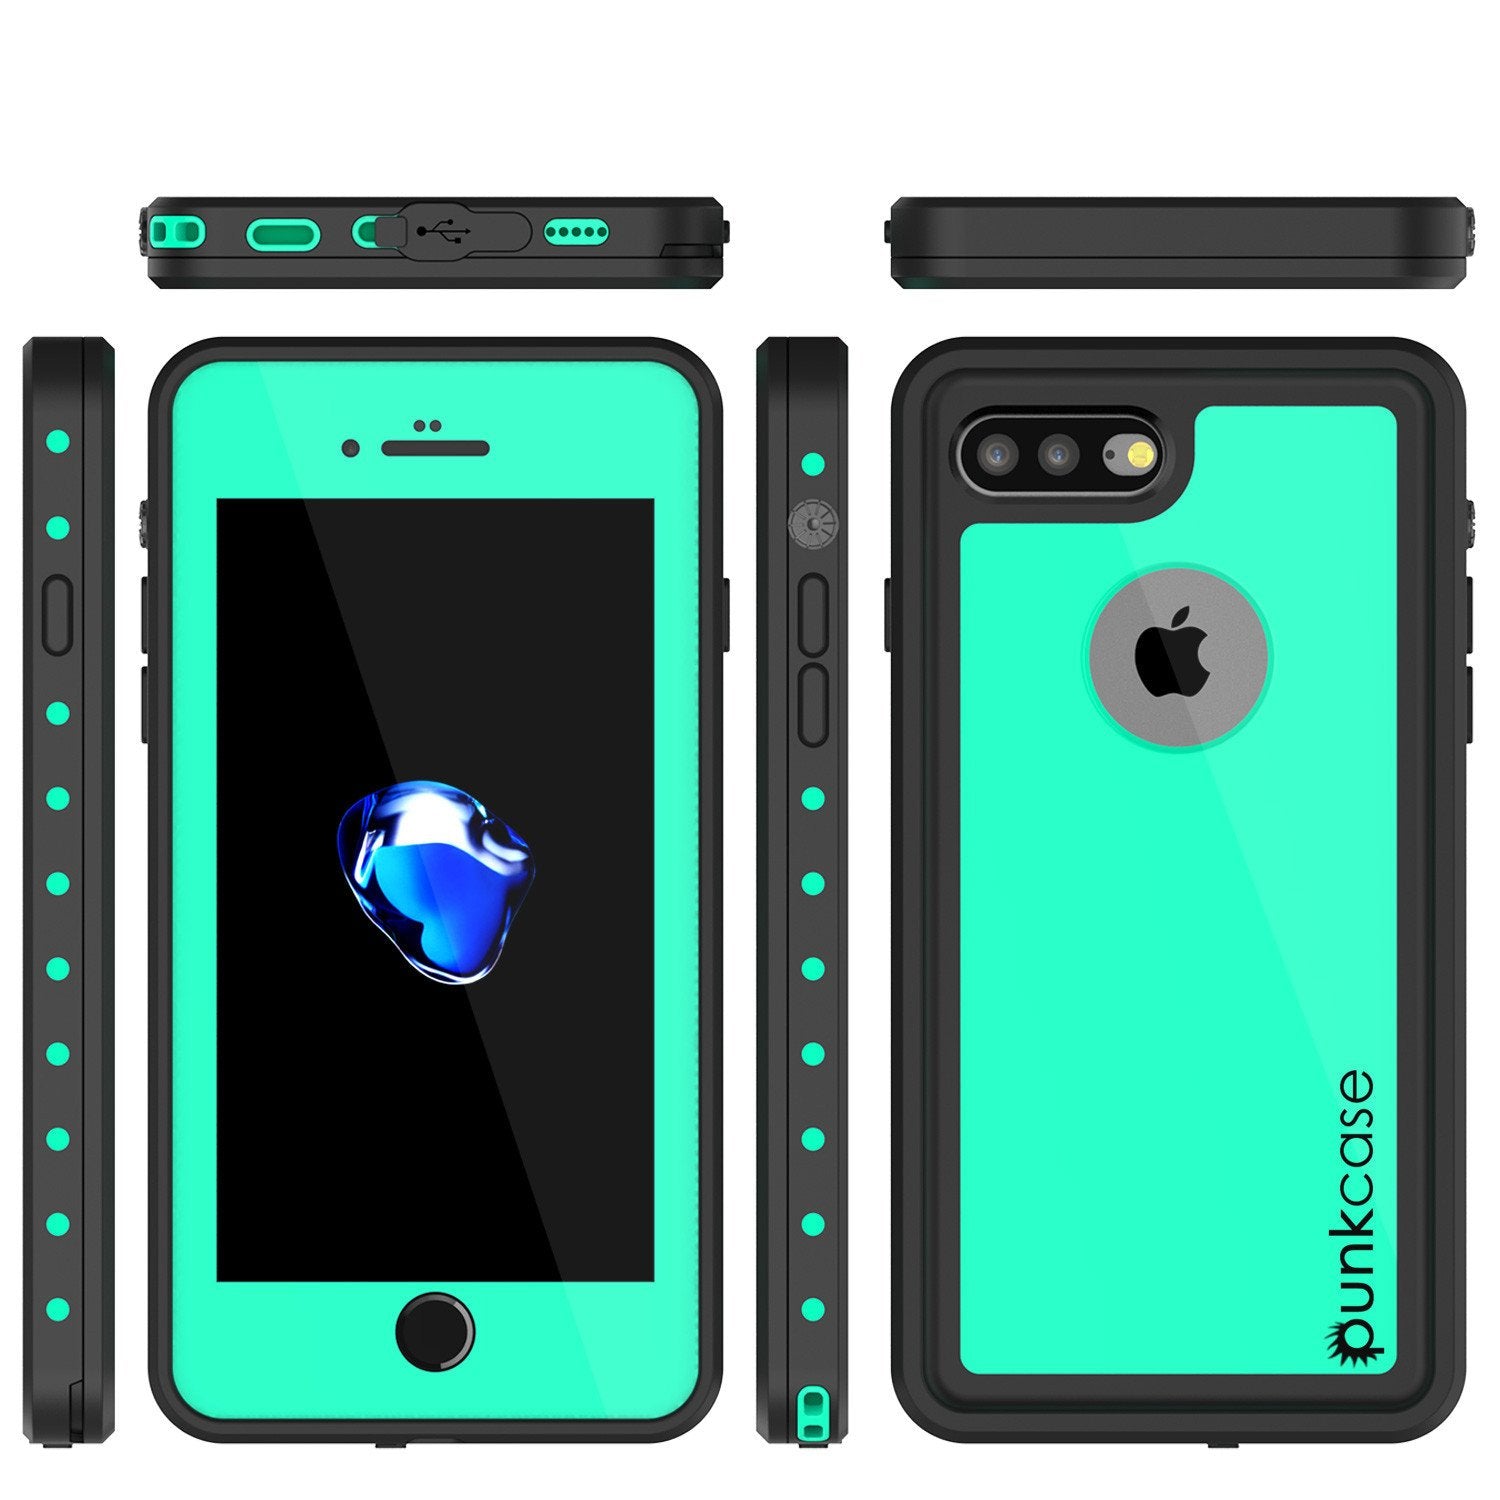 iPhone 7s Plus Waterproof Case, Punkcase [Teal] [StudStar Series] [Slim Fit] [IP68 Certified] [Shockproof] [Dirtproof] [Snowproof] Armor Cover for Apple iPhone 7 Plus & 7s +